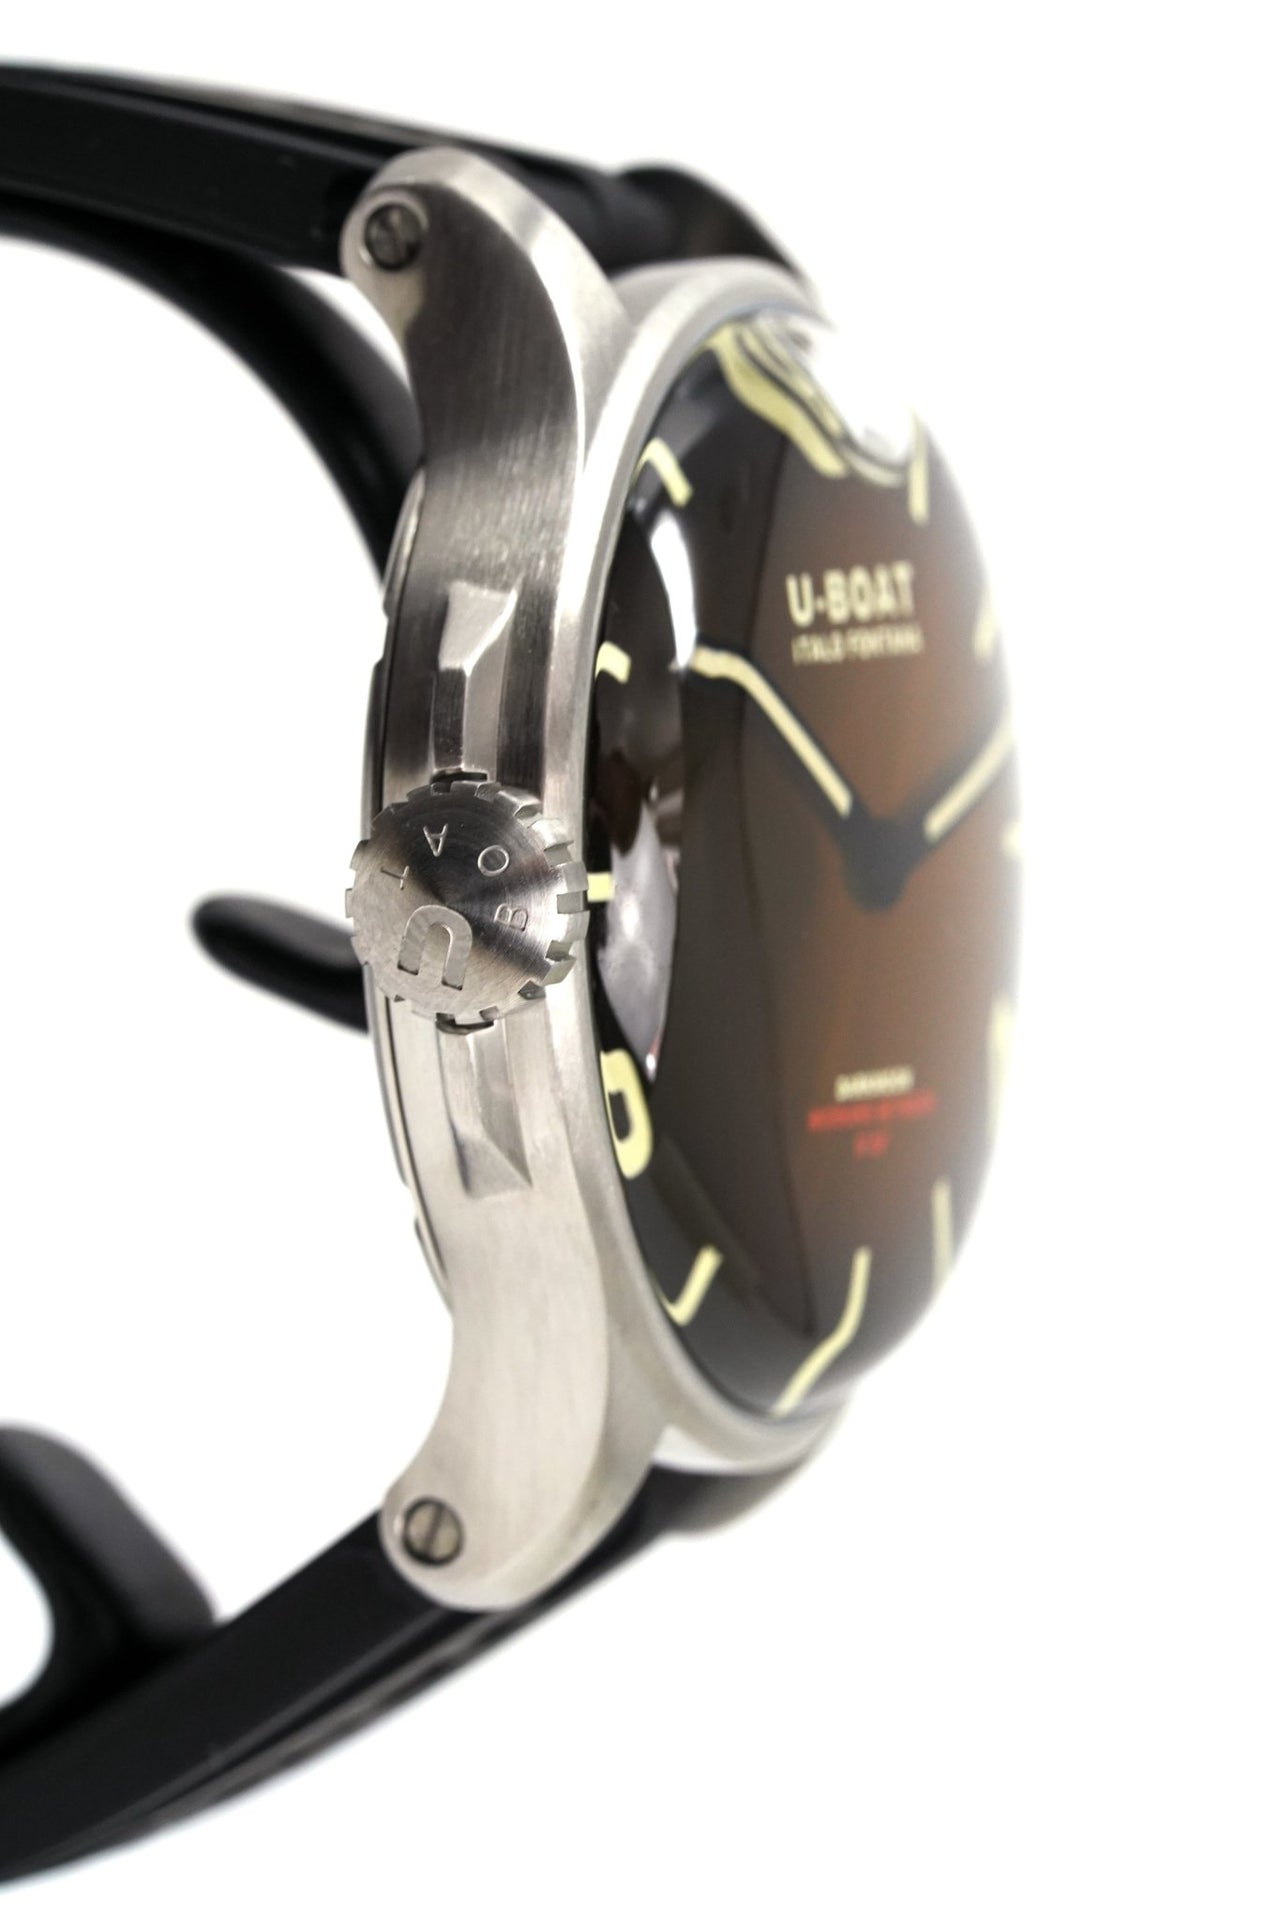 U-Boat Darkmoon 44 Elegant Brown Steel - 2021 EDITION - Watches & Crystals